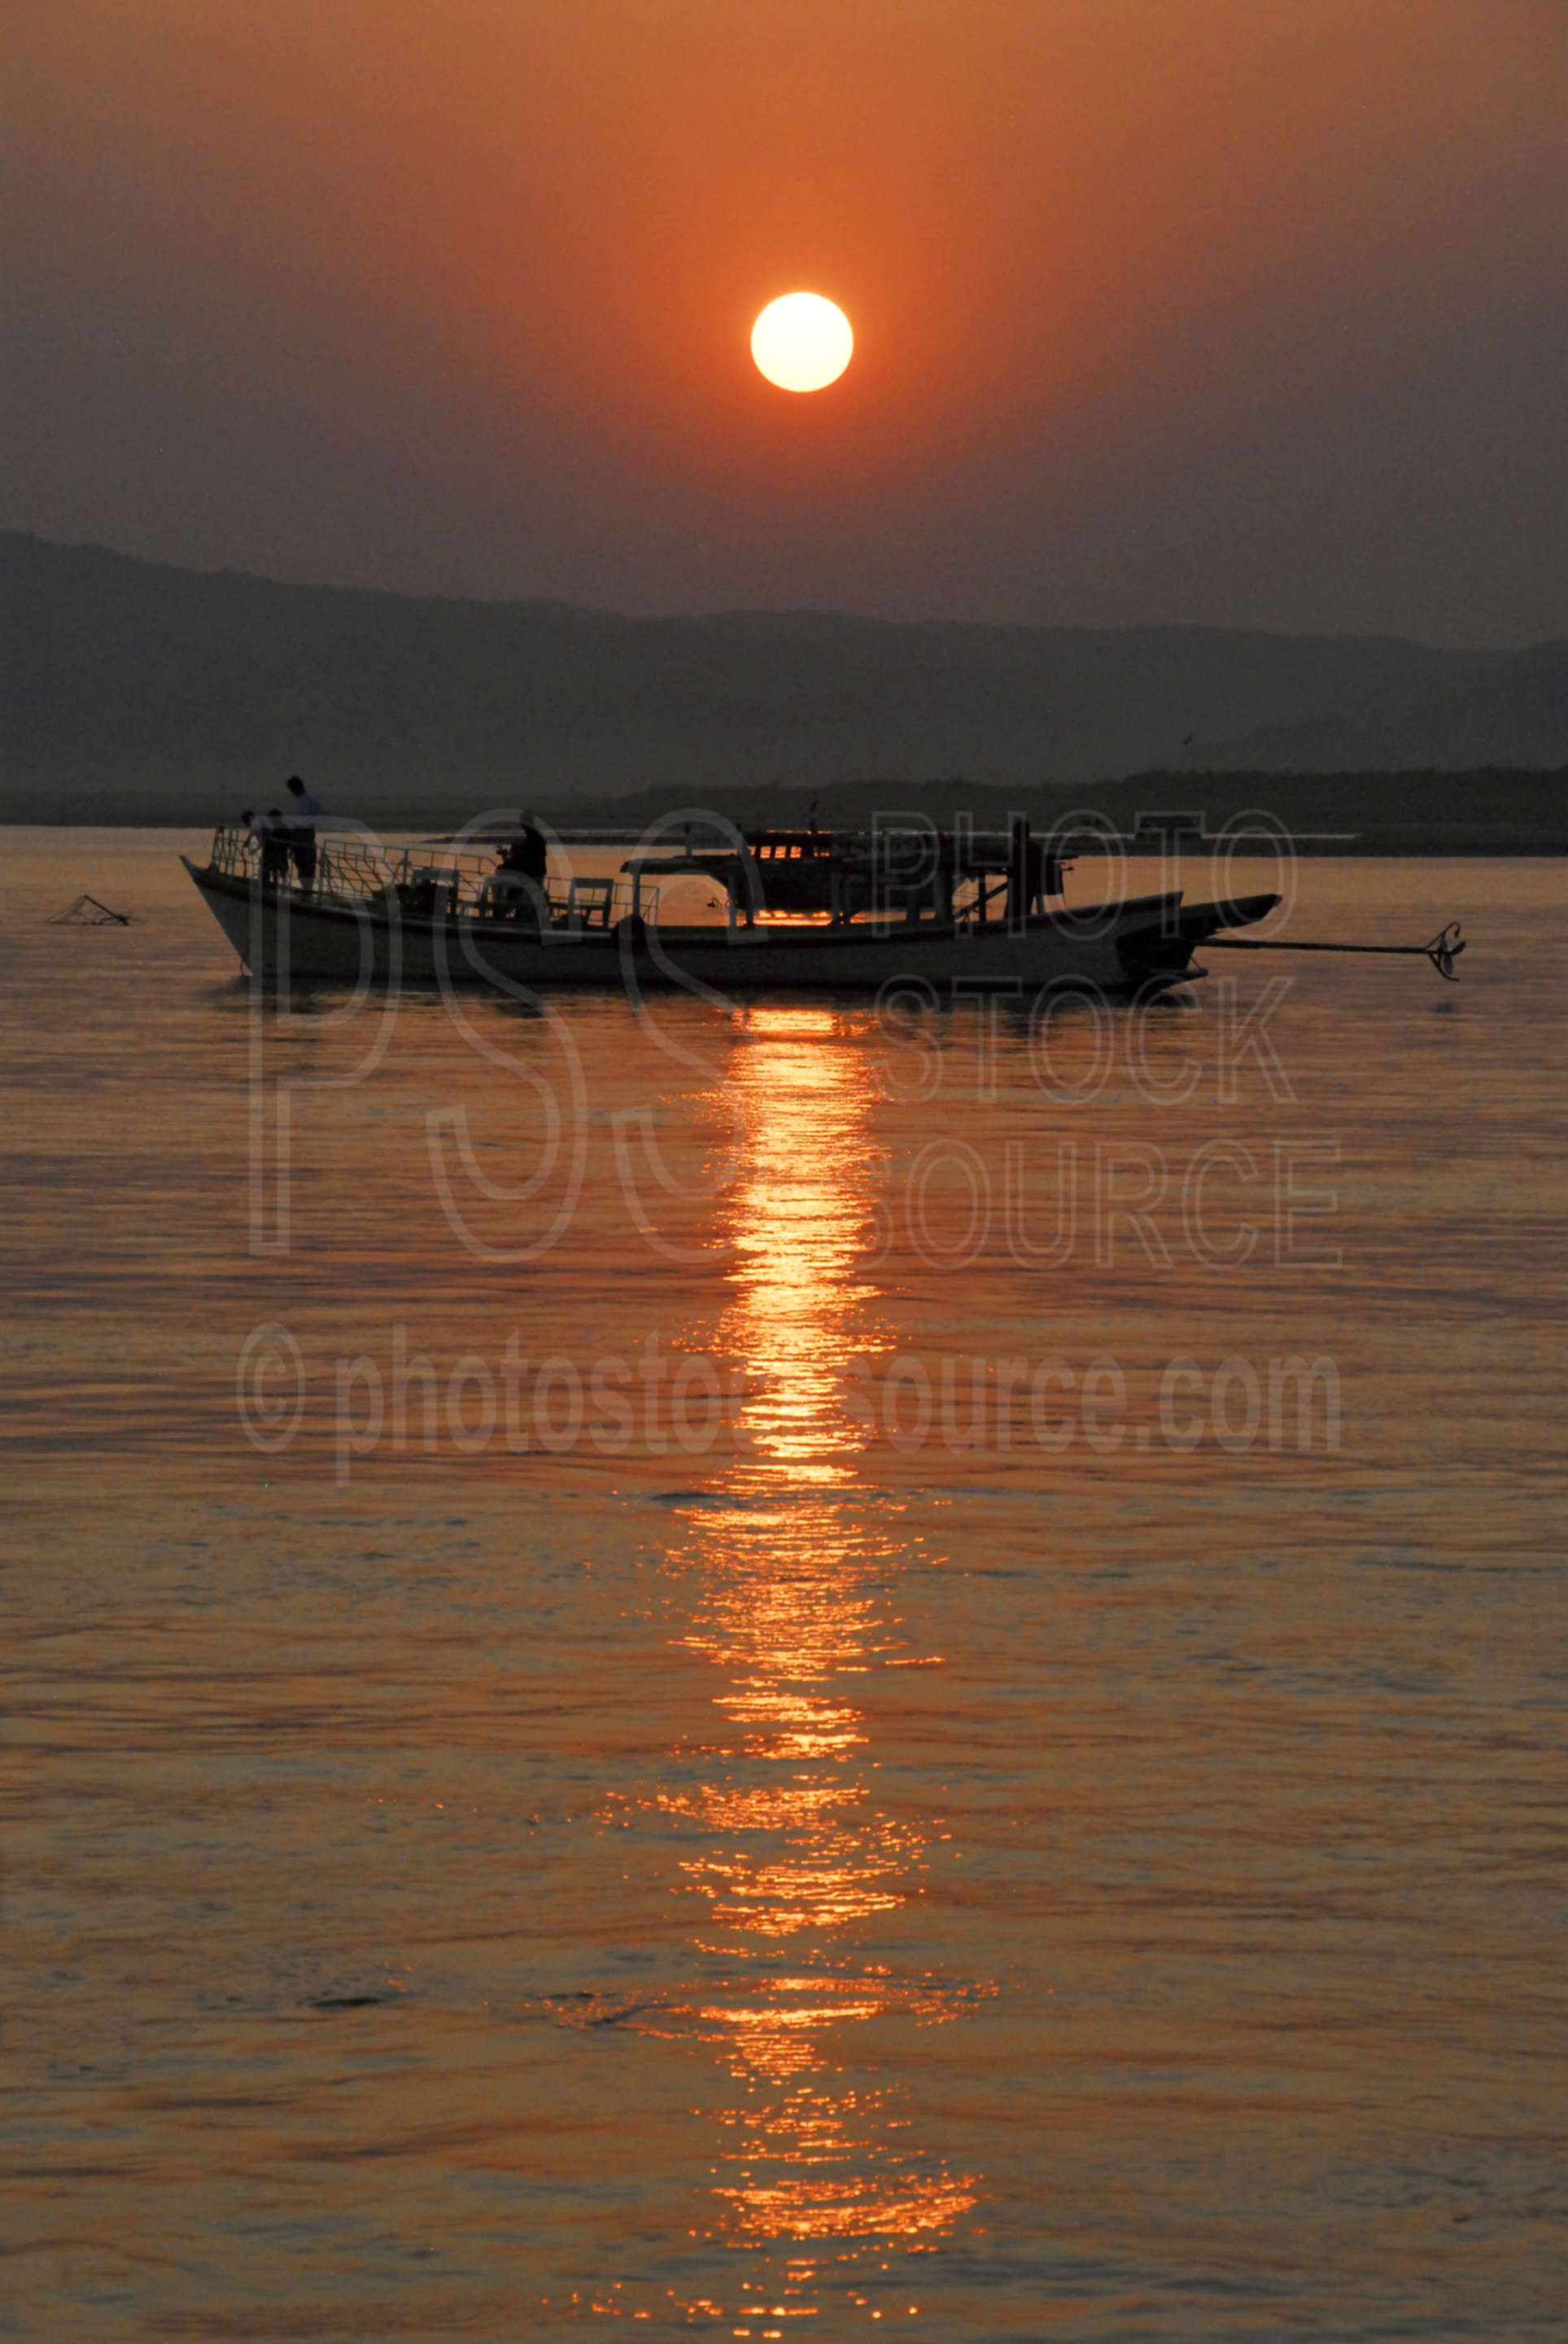 Irrawaddy Boat at Sunset,myanmar,boat,boats,river,irrawaddy,ayeyarwady,water,afternoon,sunset,reflection,pagan